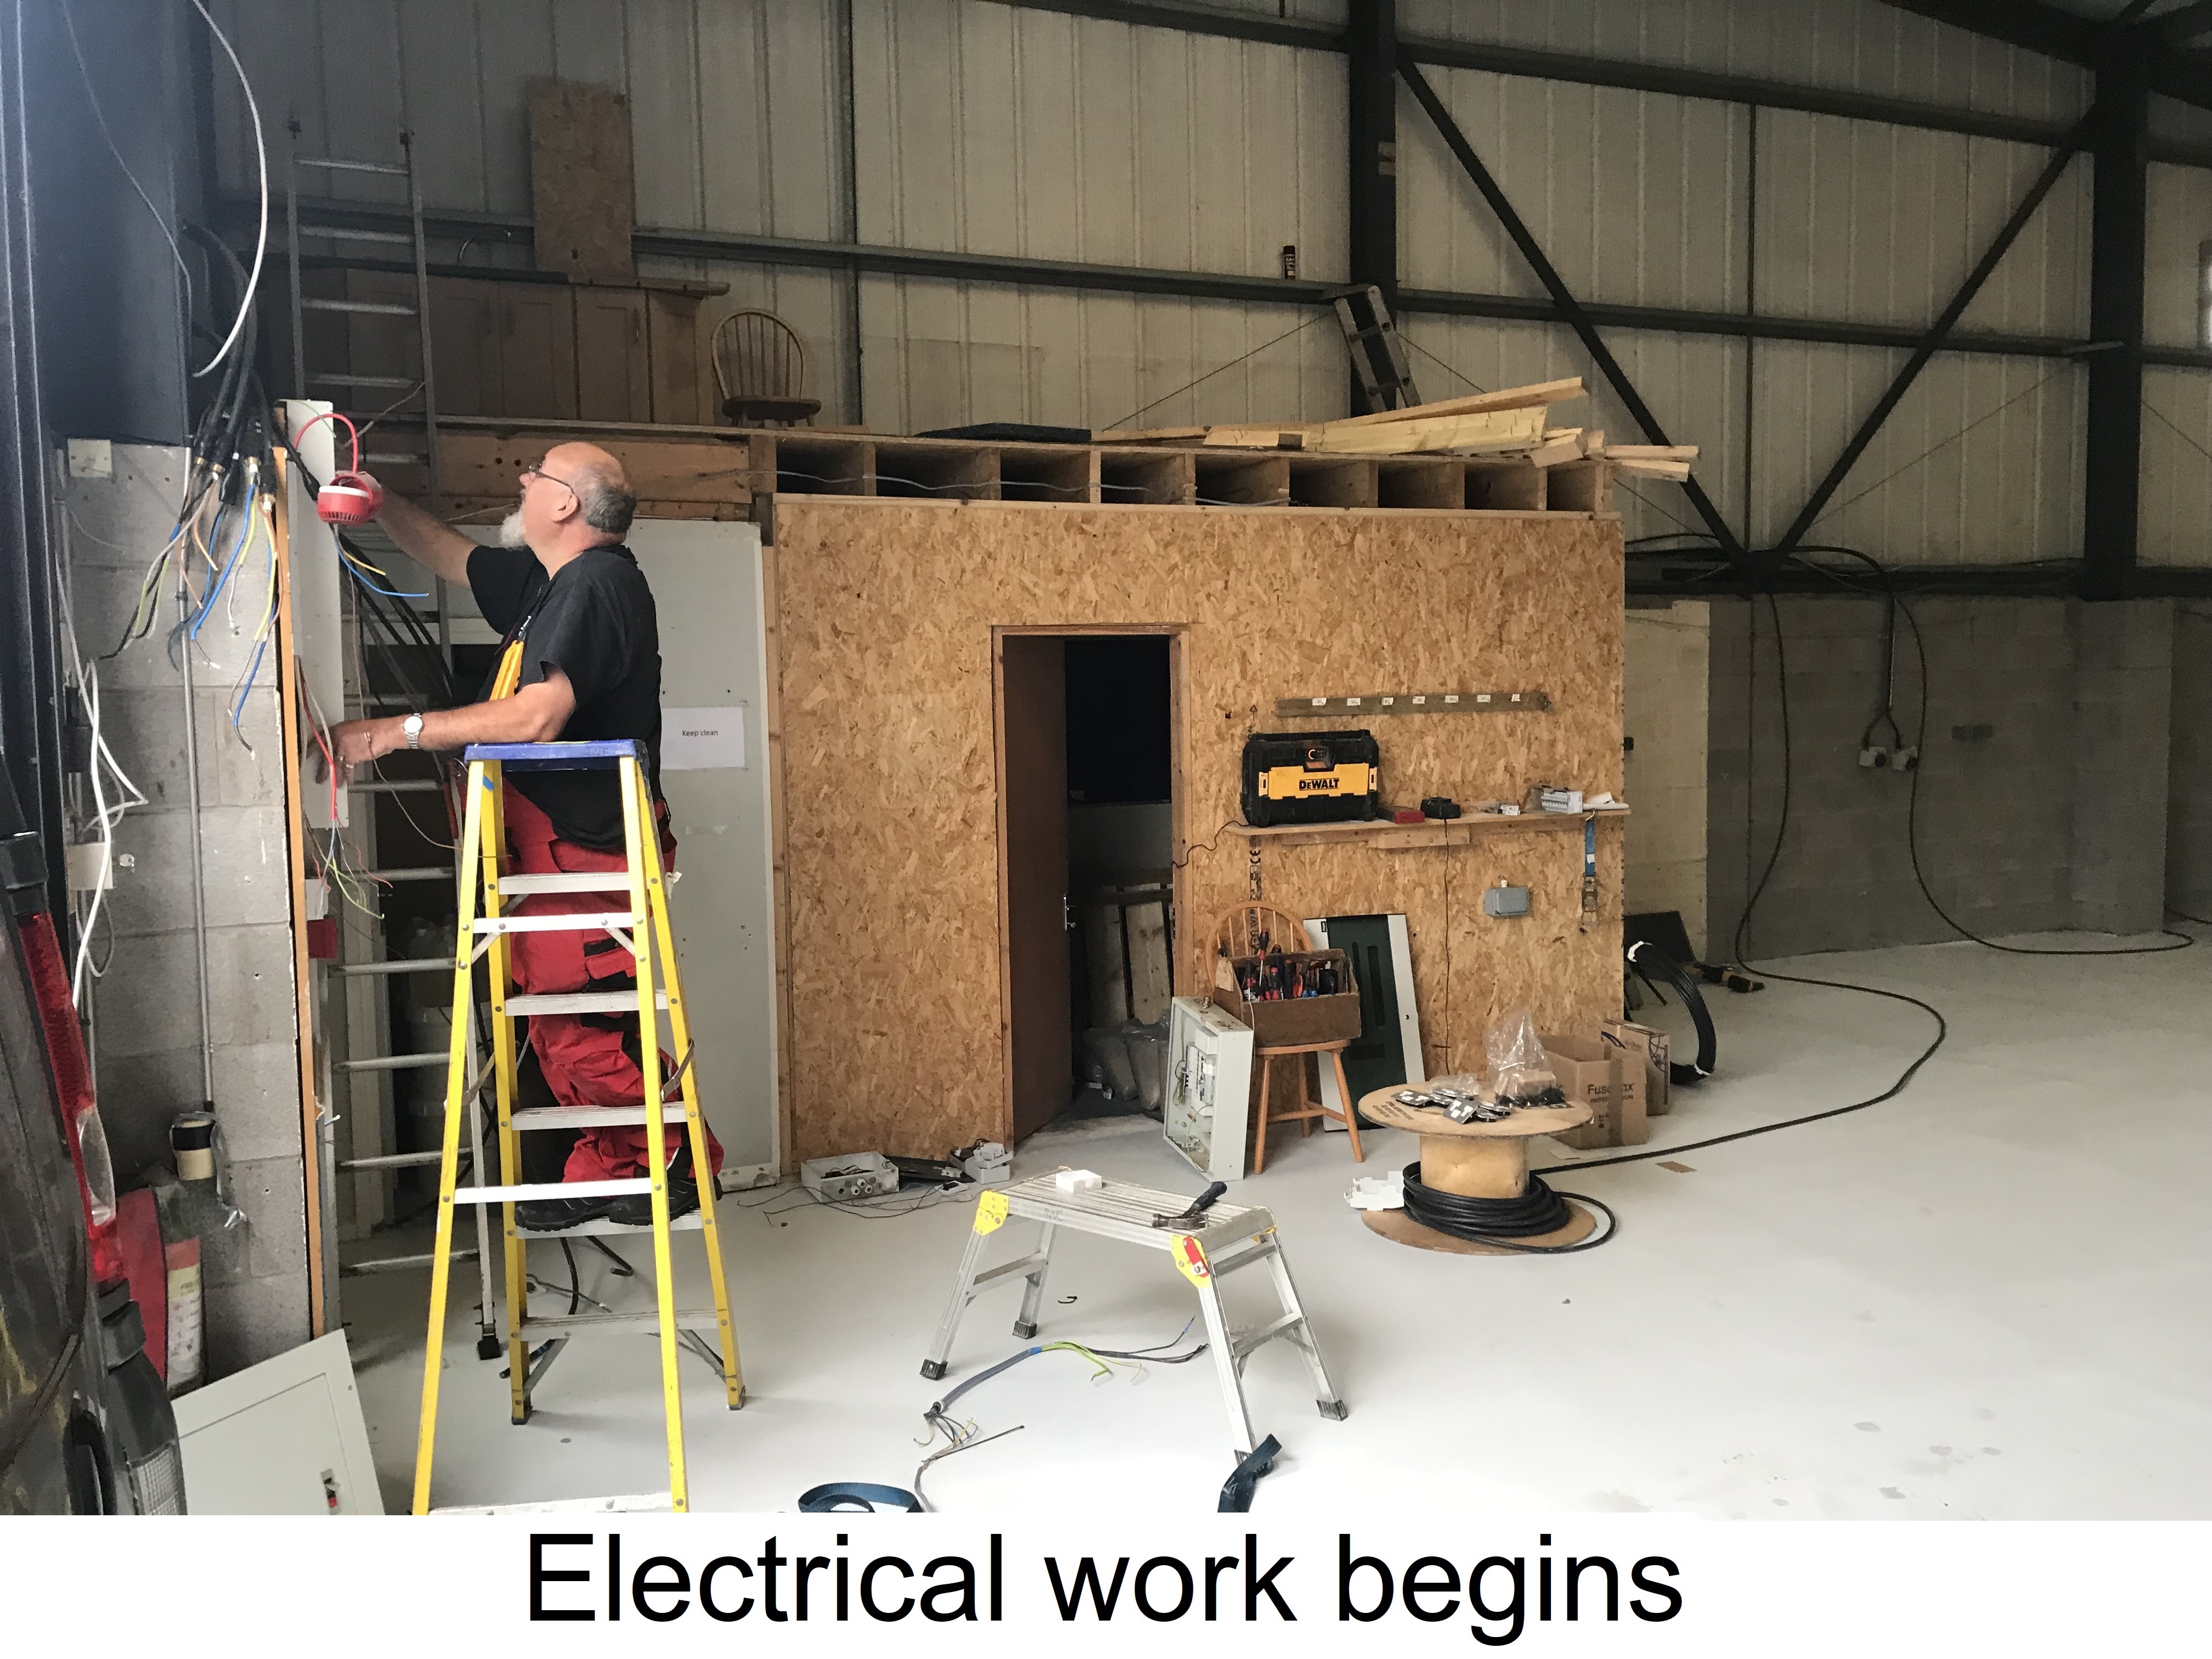 https://0201.nccdn.net/4_2/000/000/07d/e1f/7.-electrical-work-begins.jpg